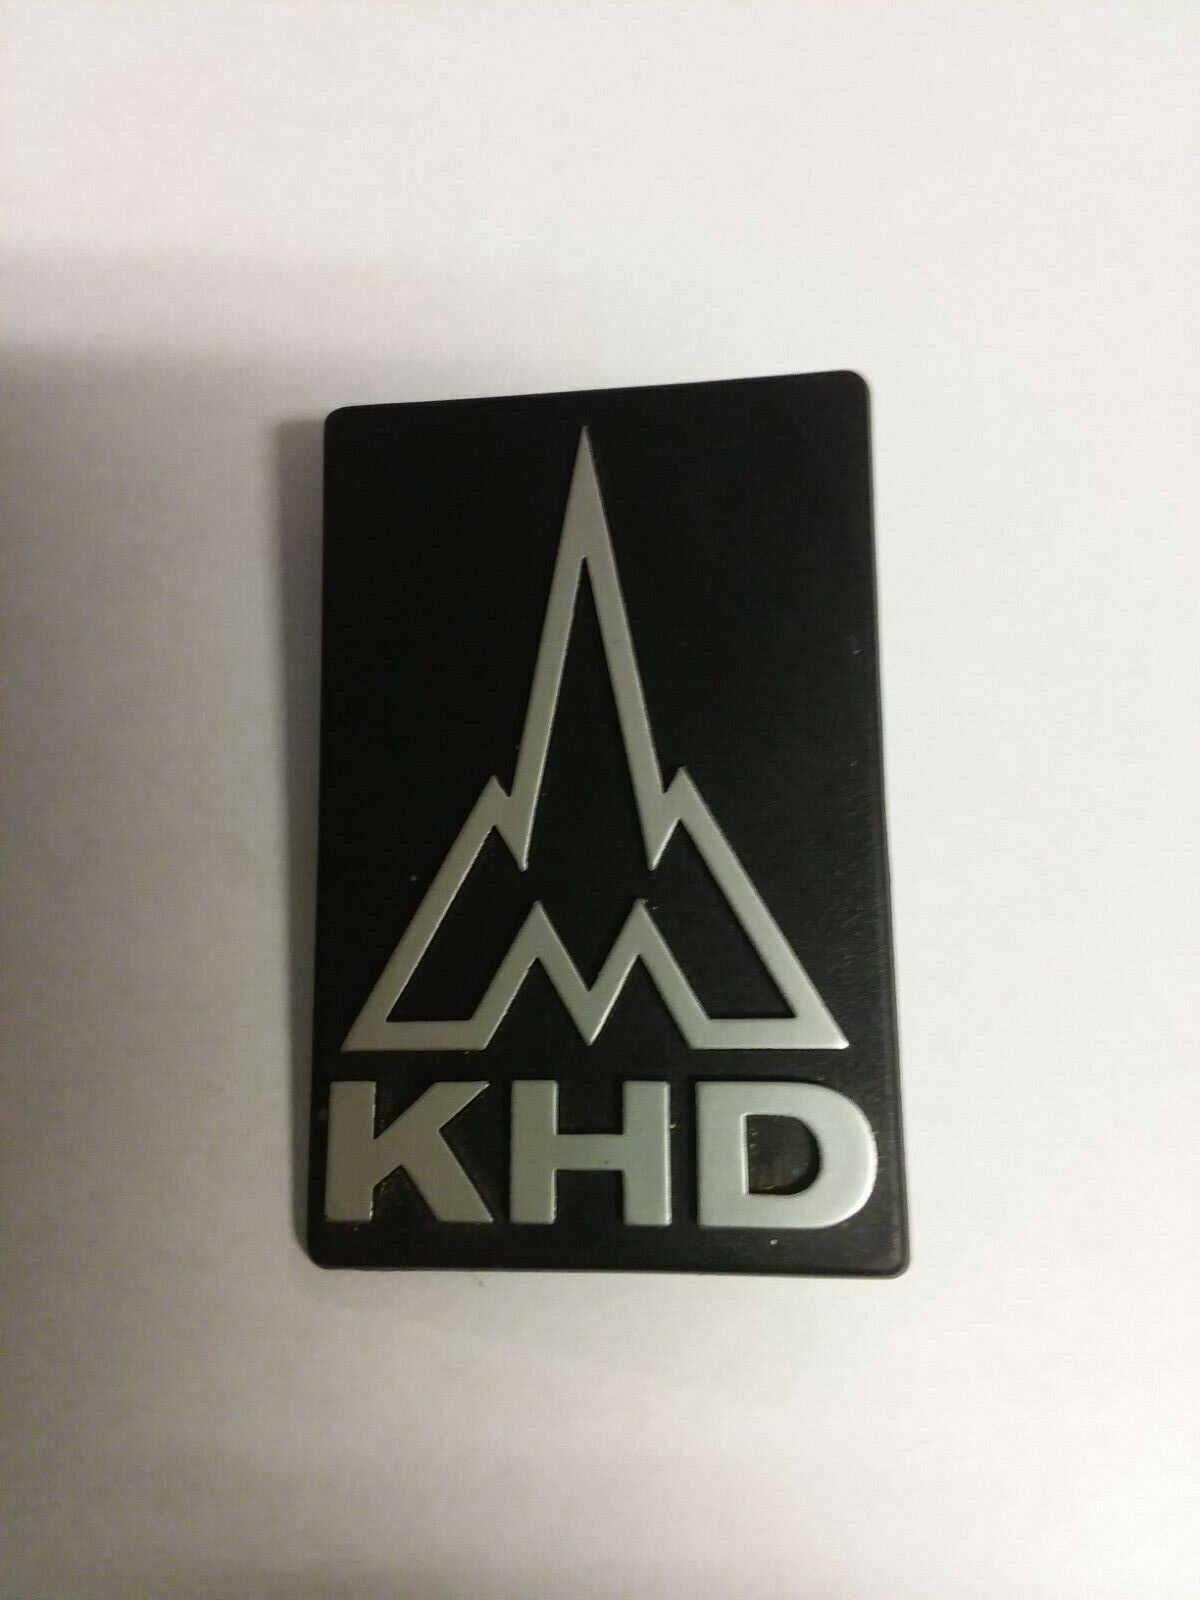 Deutz KHD grill emblem 04349037 for 07 and DX series tractors